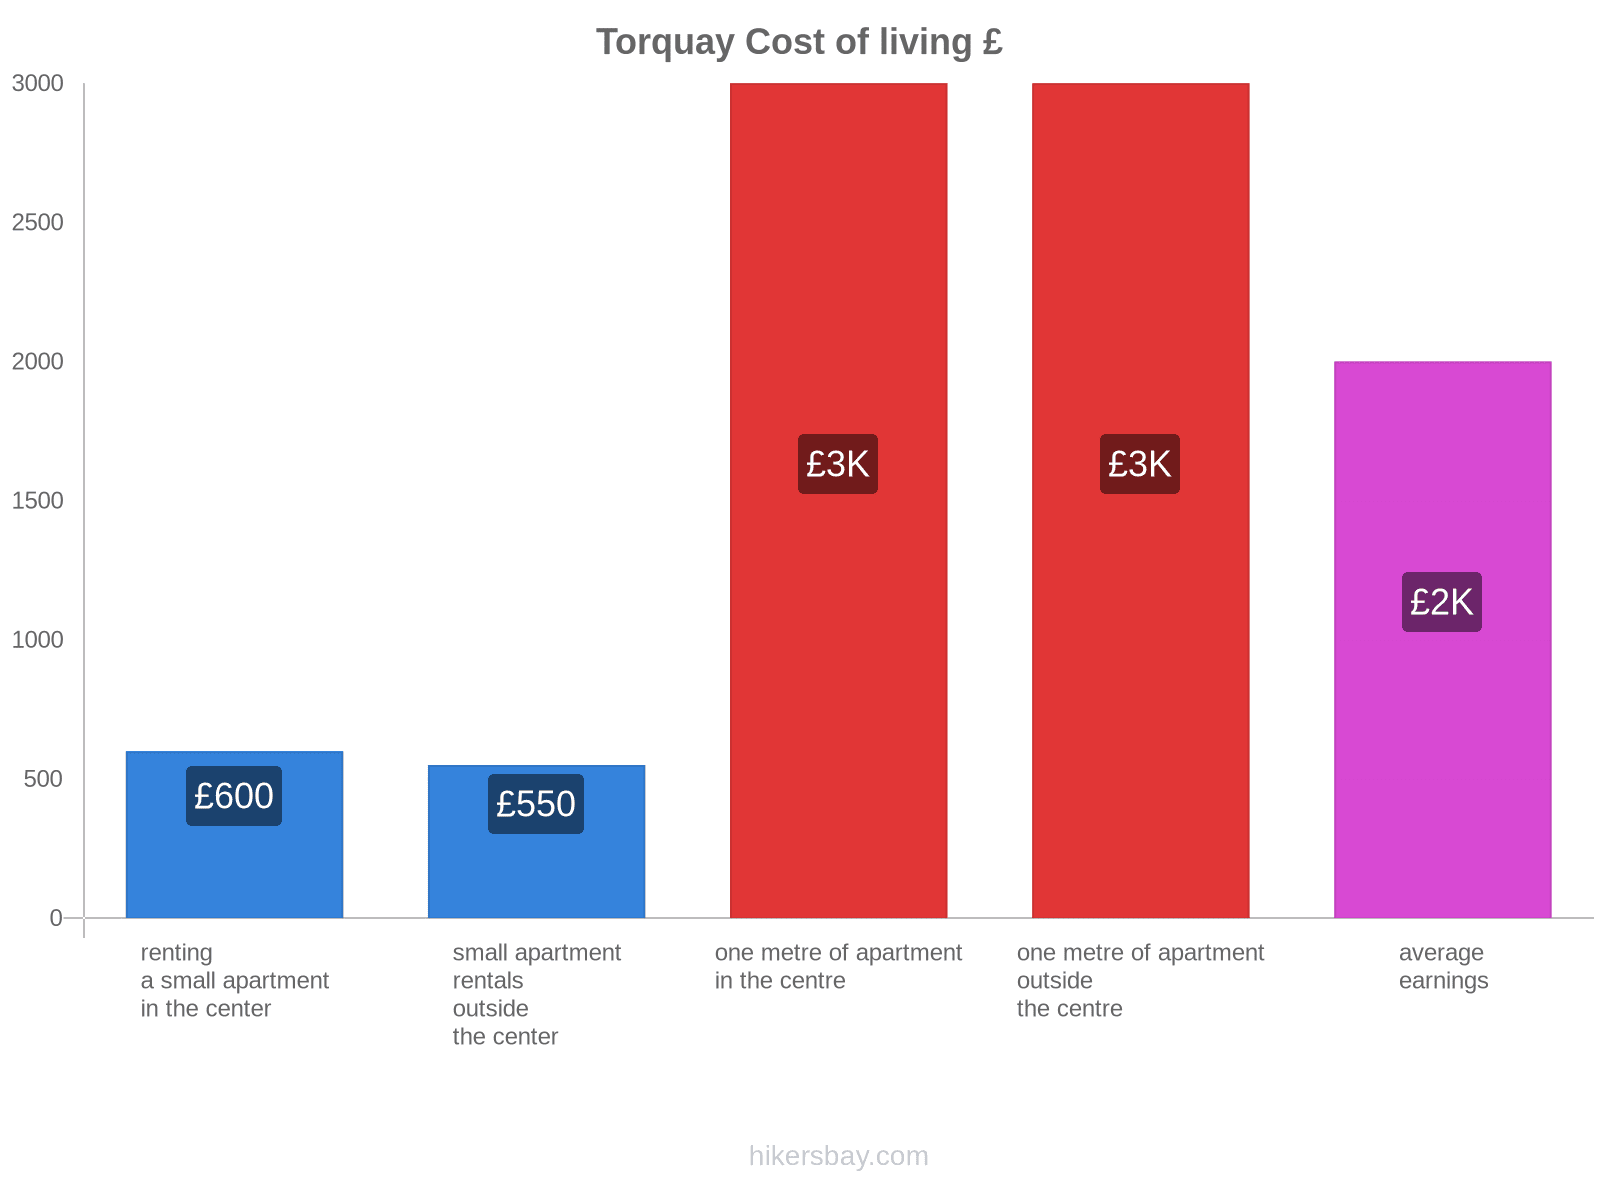 Torquay cost of living hikersbay.com